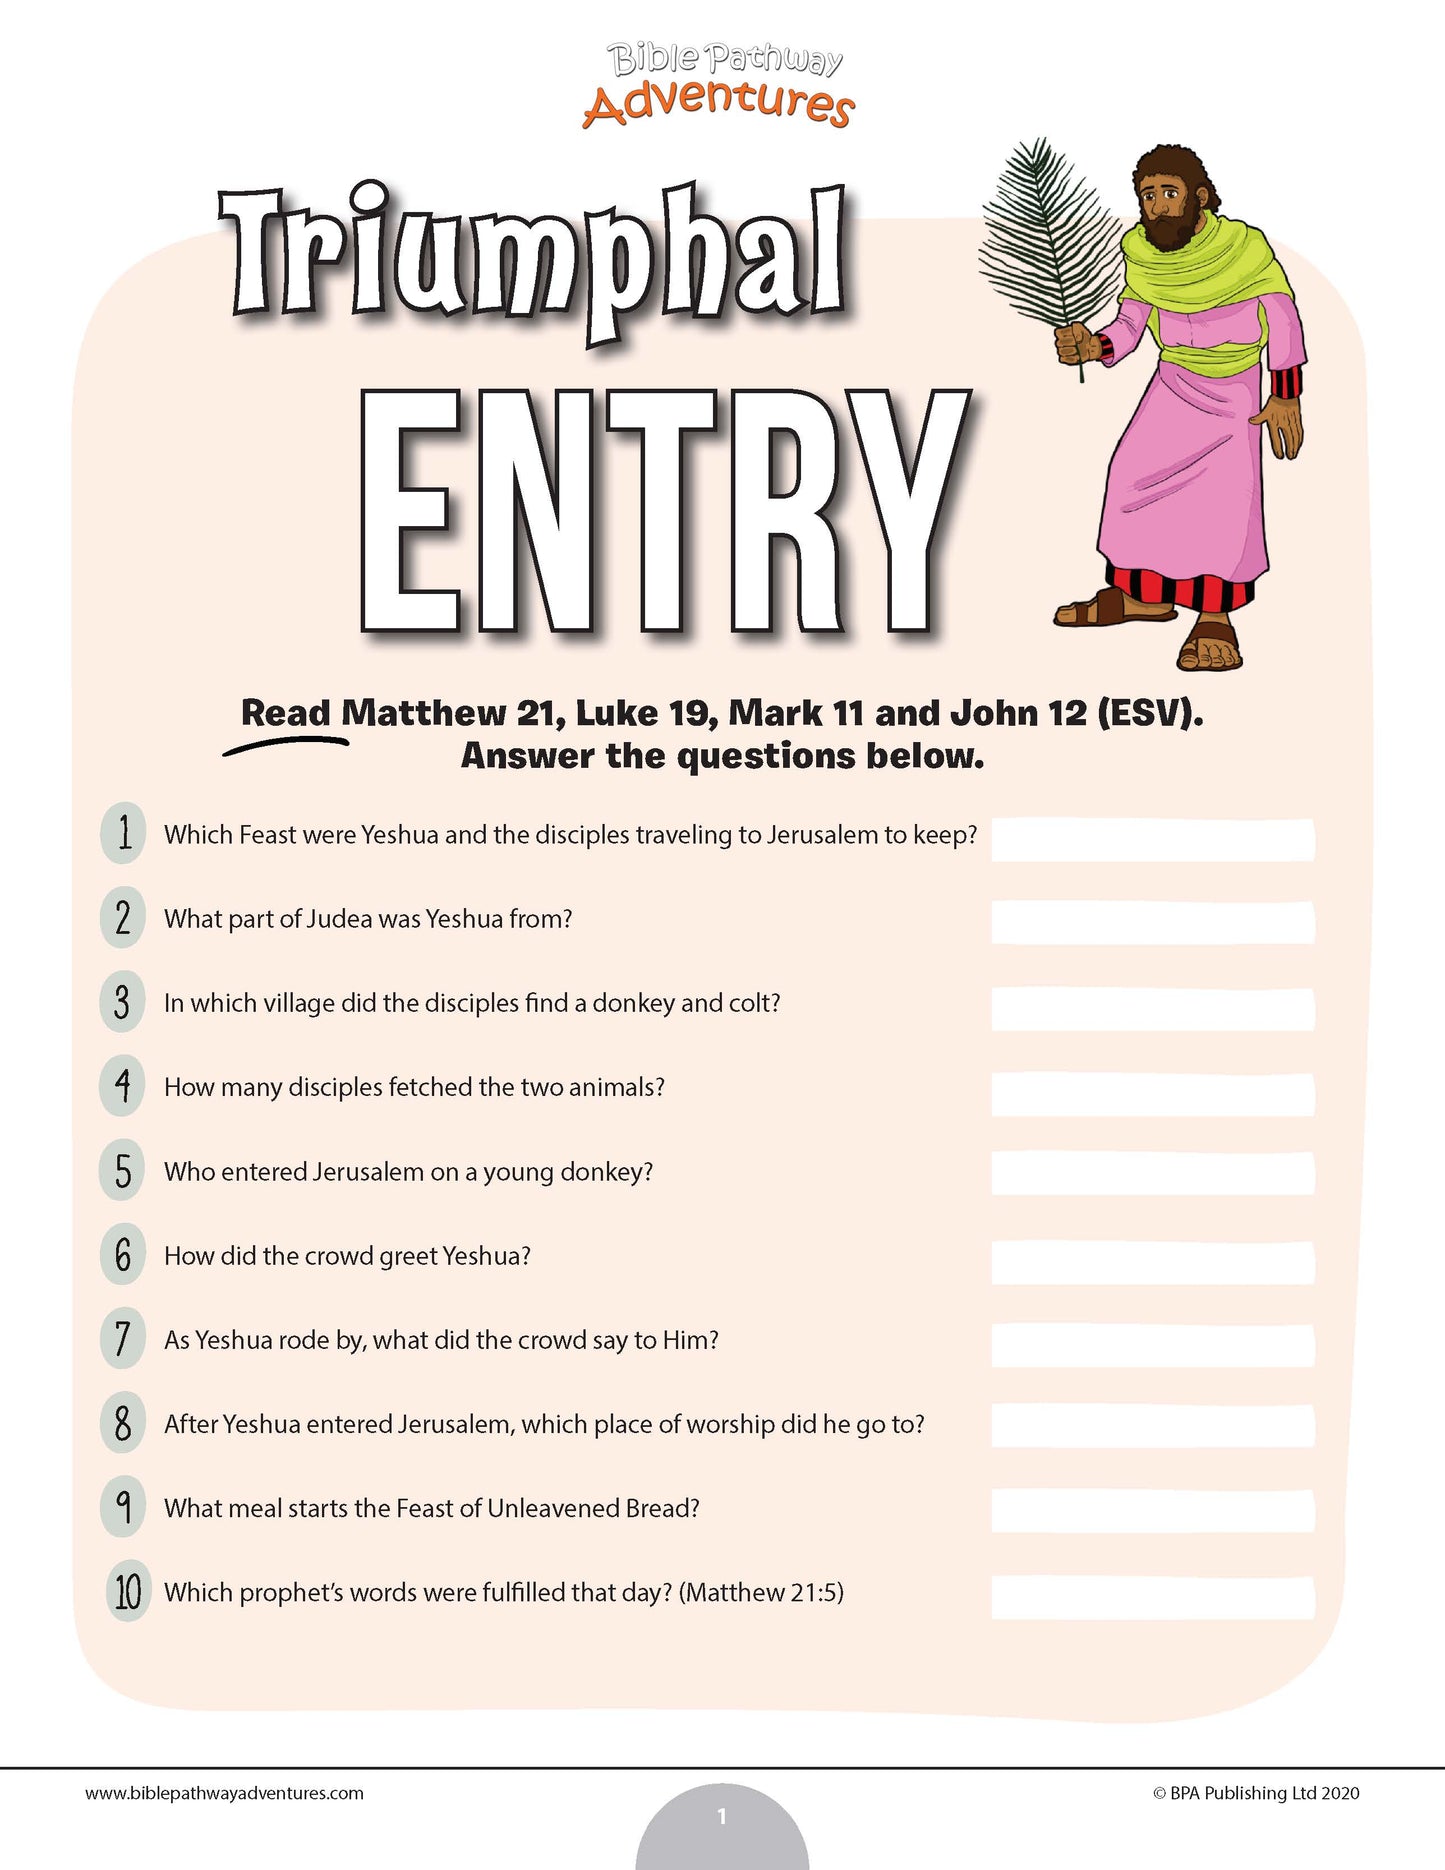 Triumphal Entry quiz